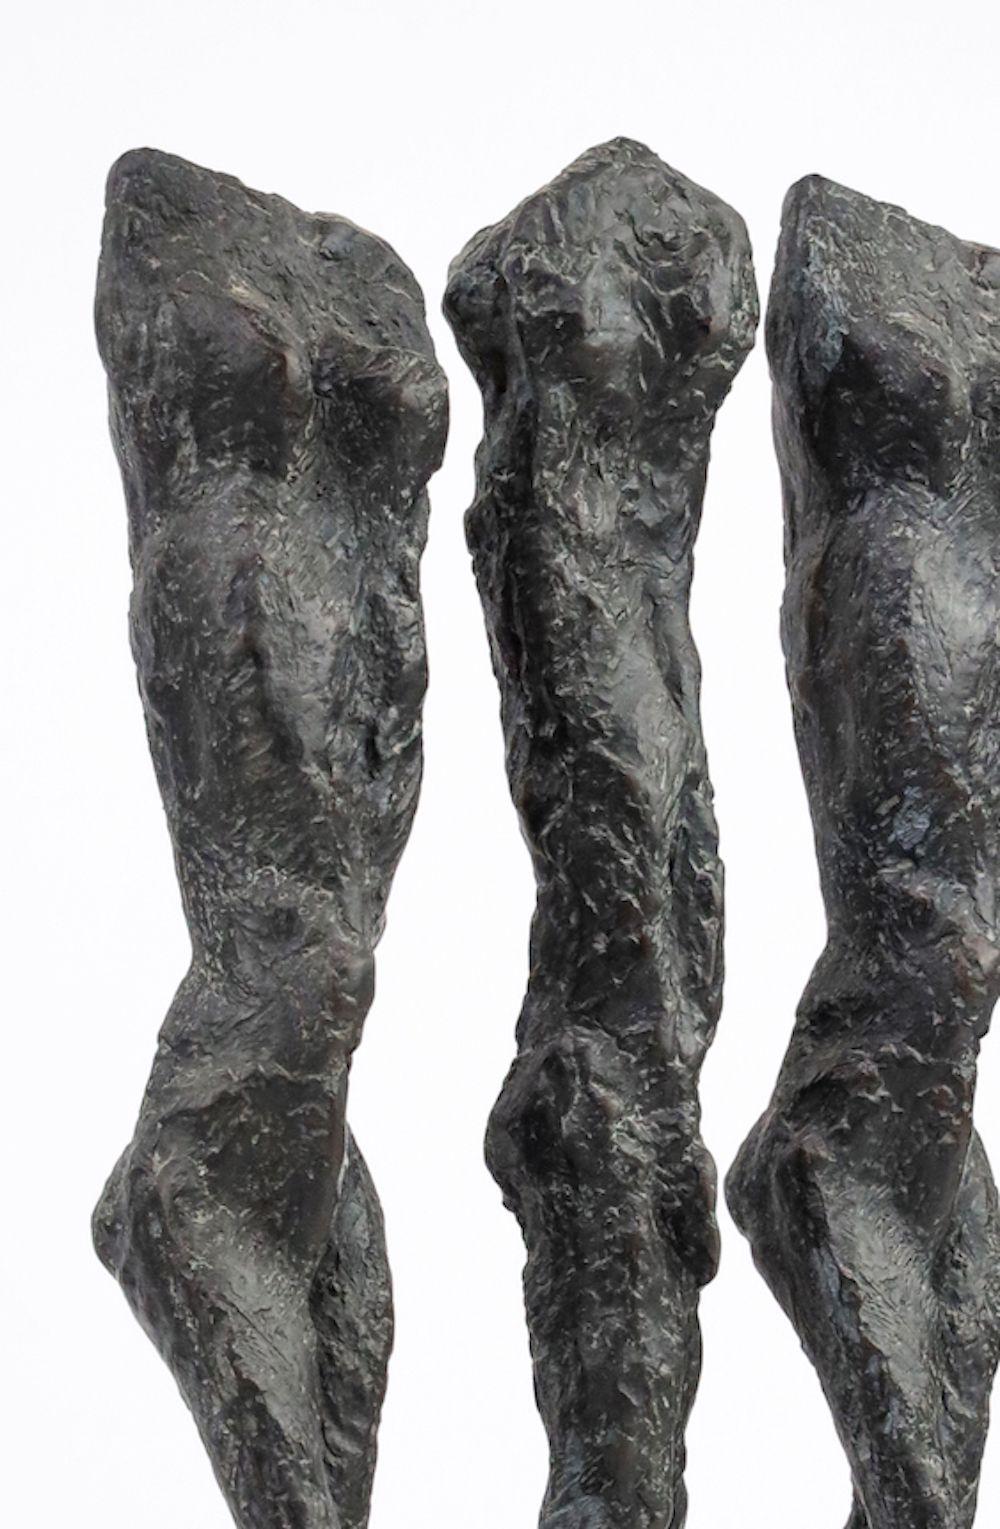 In Line von M. Demal - Bronzeskulptur, Gruppe von weiblichen Figuren, halb-abstrakte Skulptur – Sculpture von Martine Demal